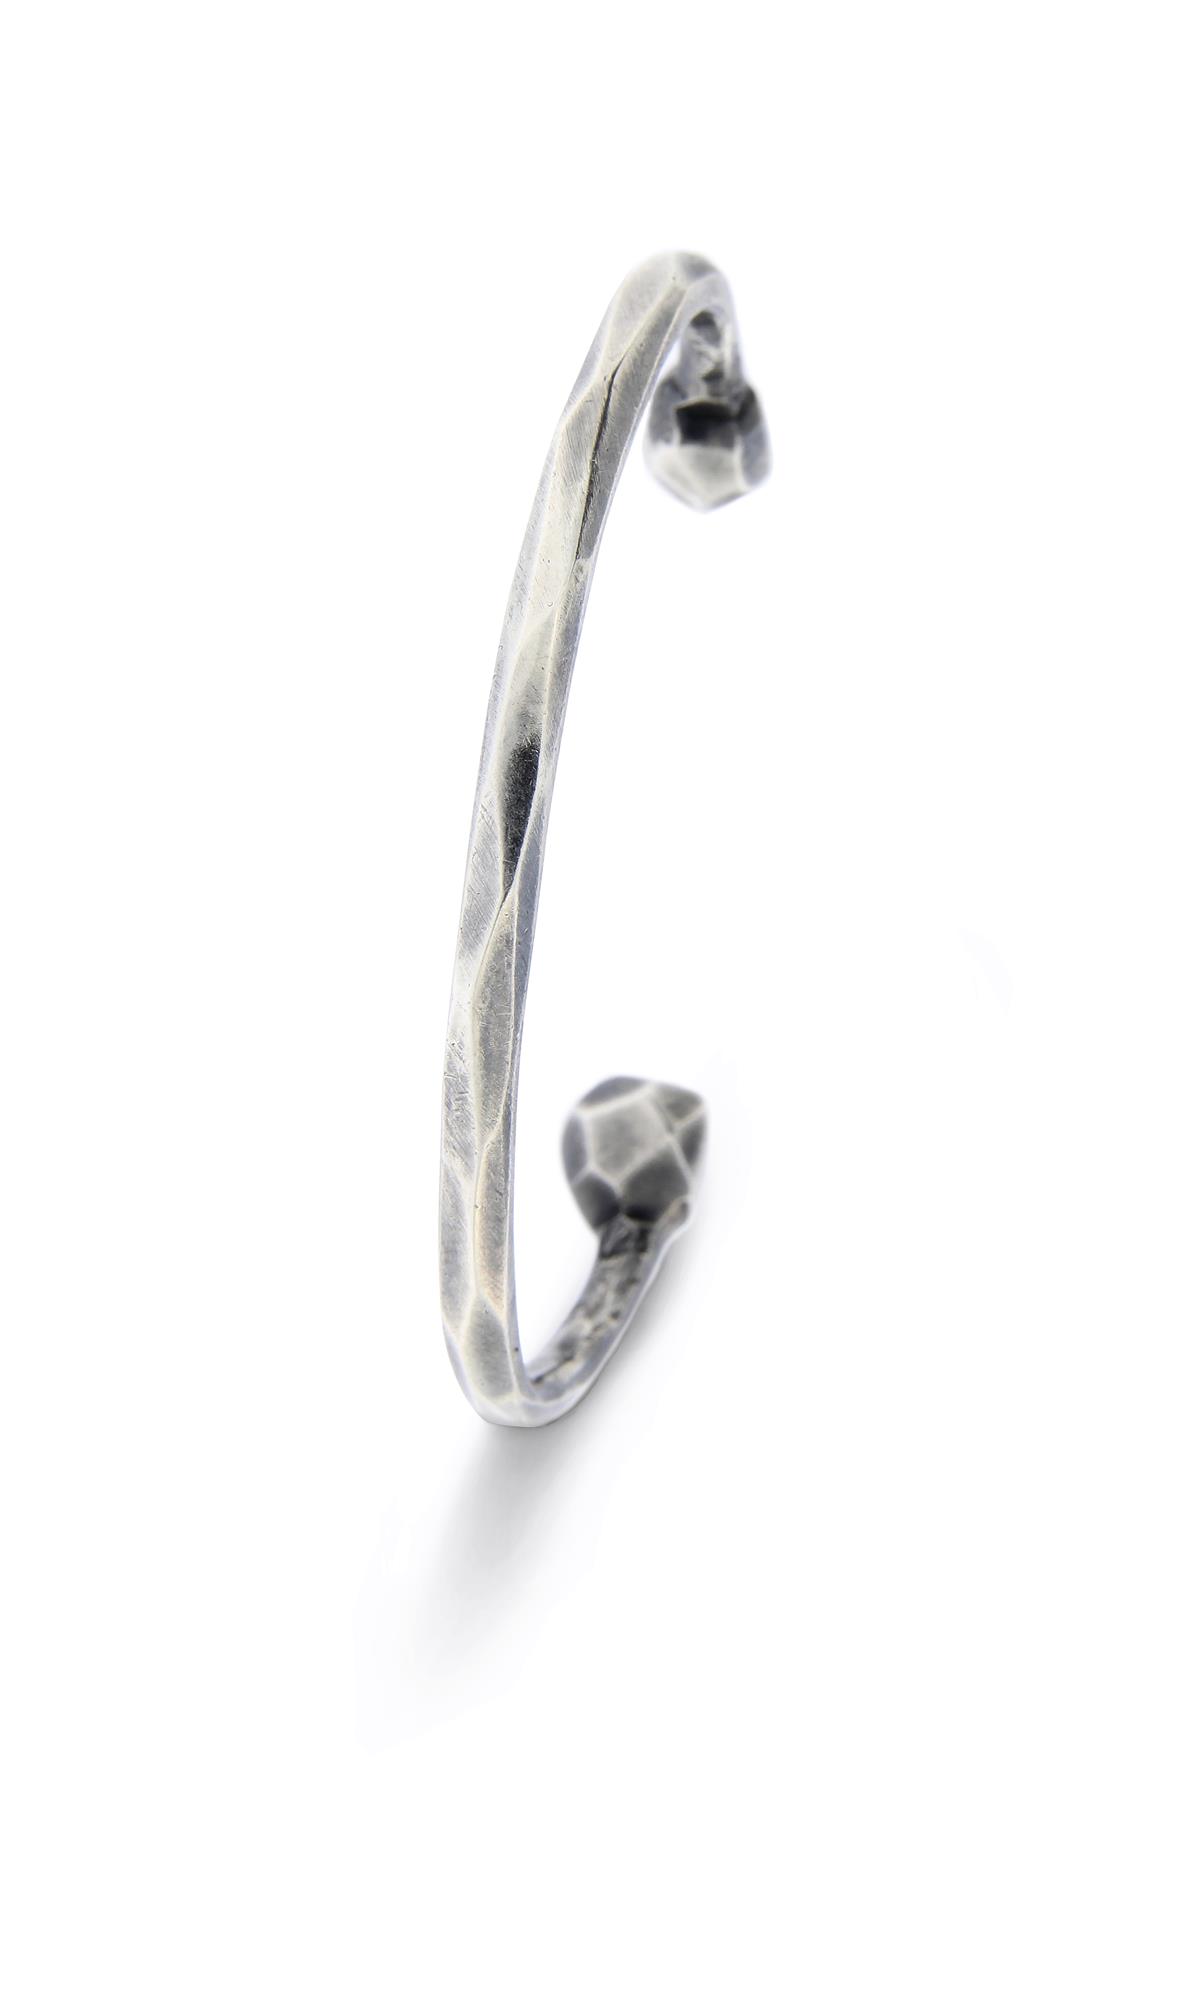 Katie g. Jewellery - Cutting Edge Bracelet Silber Oxidiert - Getragen und Patiniert 1 - ab 270€